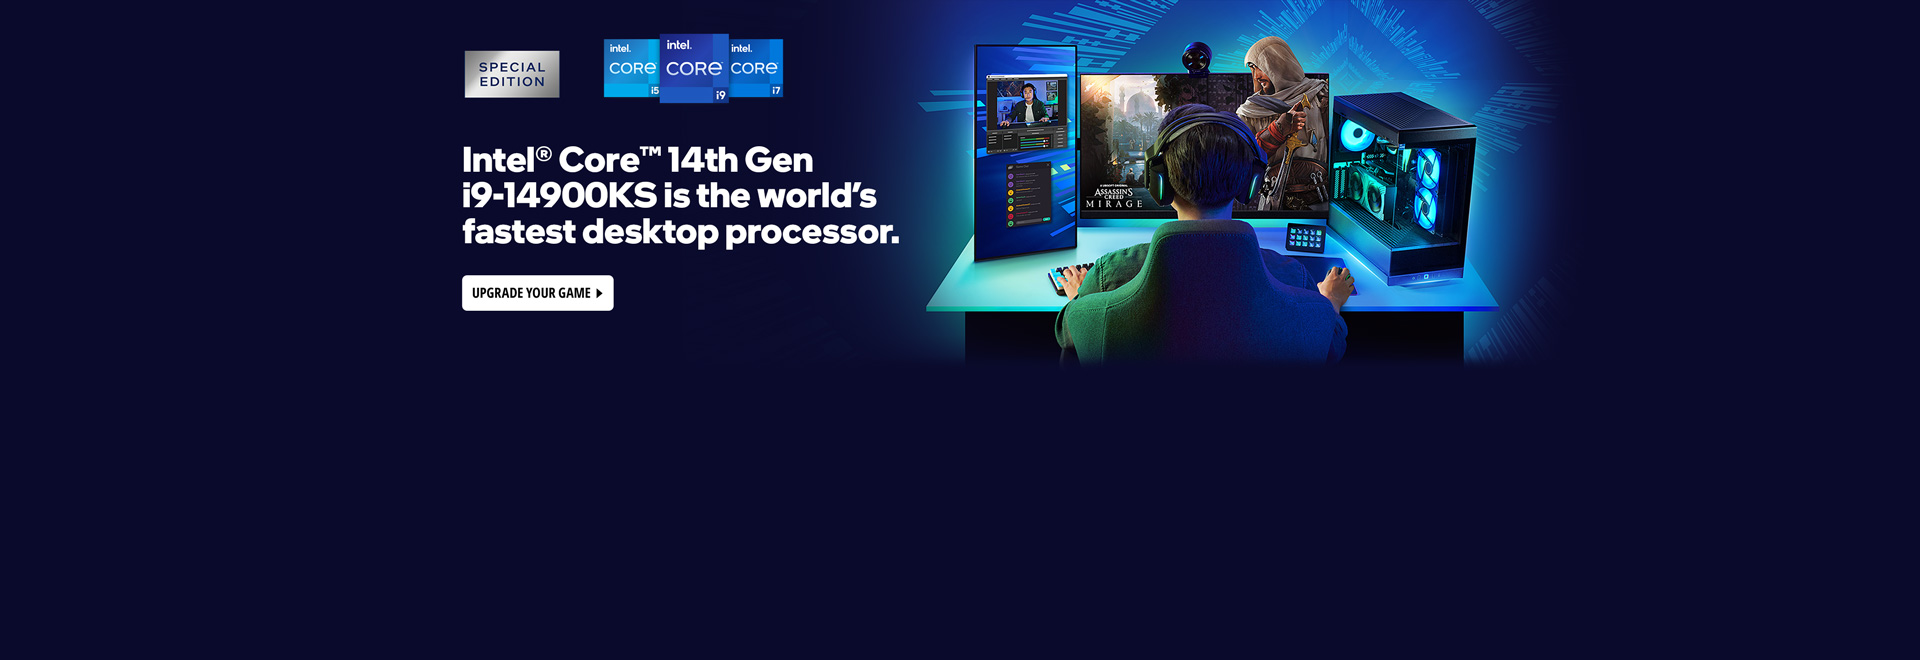 Intel® Core ™ 14th Gen i9-14900KS